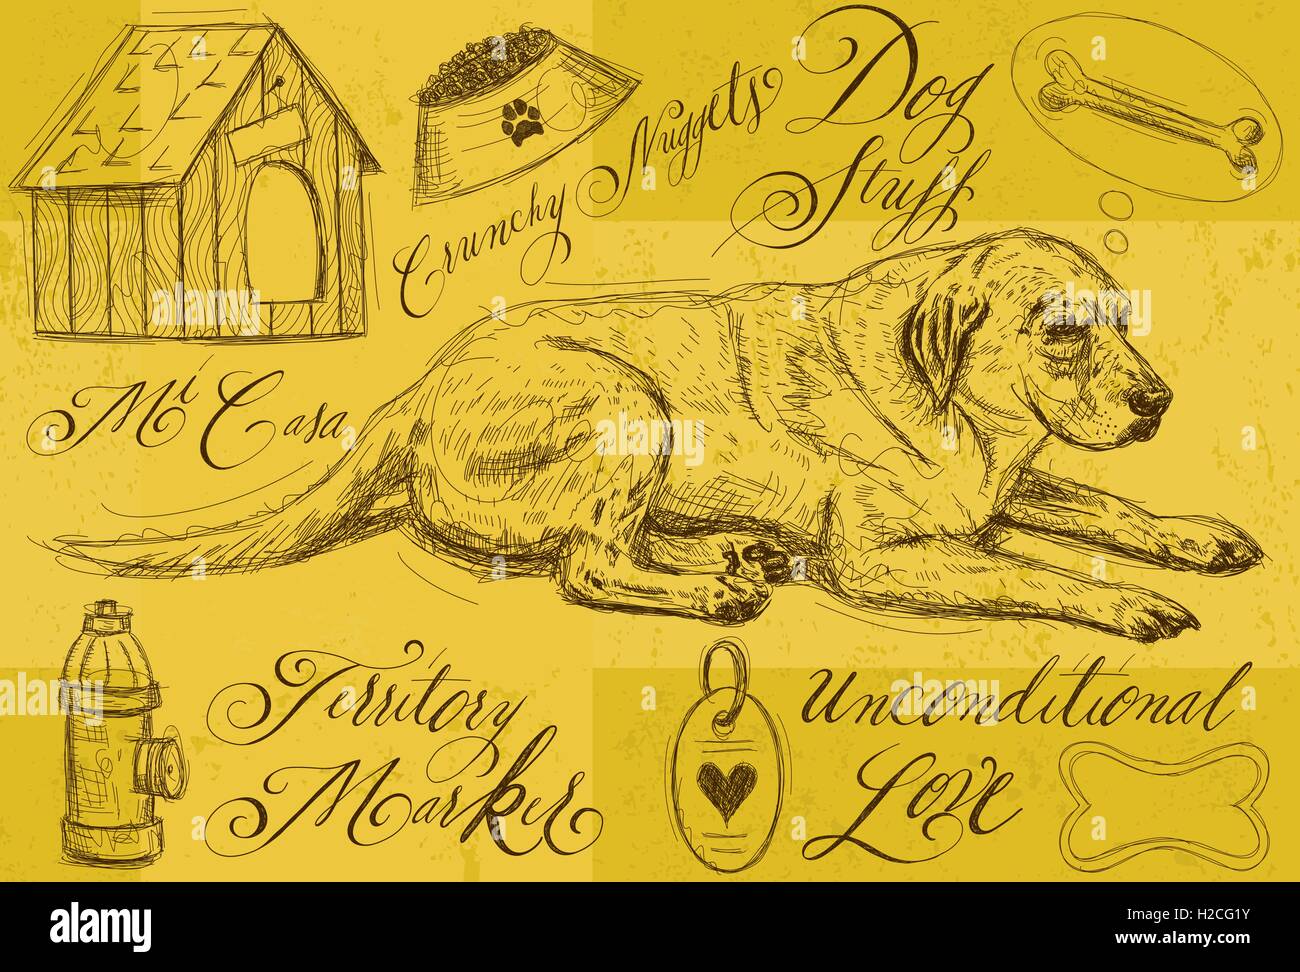 Hund Sachen Sie einen Hund seinen Knochen mit anderen Design-Element Kritzeleien und handgeschriebene Kalligraphie zu denken. Stock Vektor